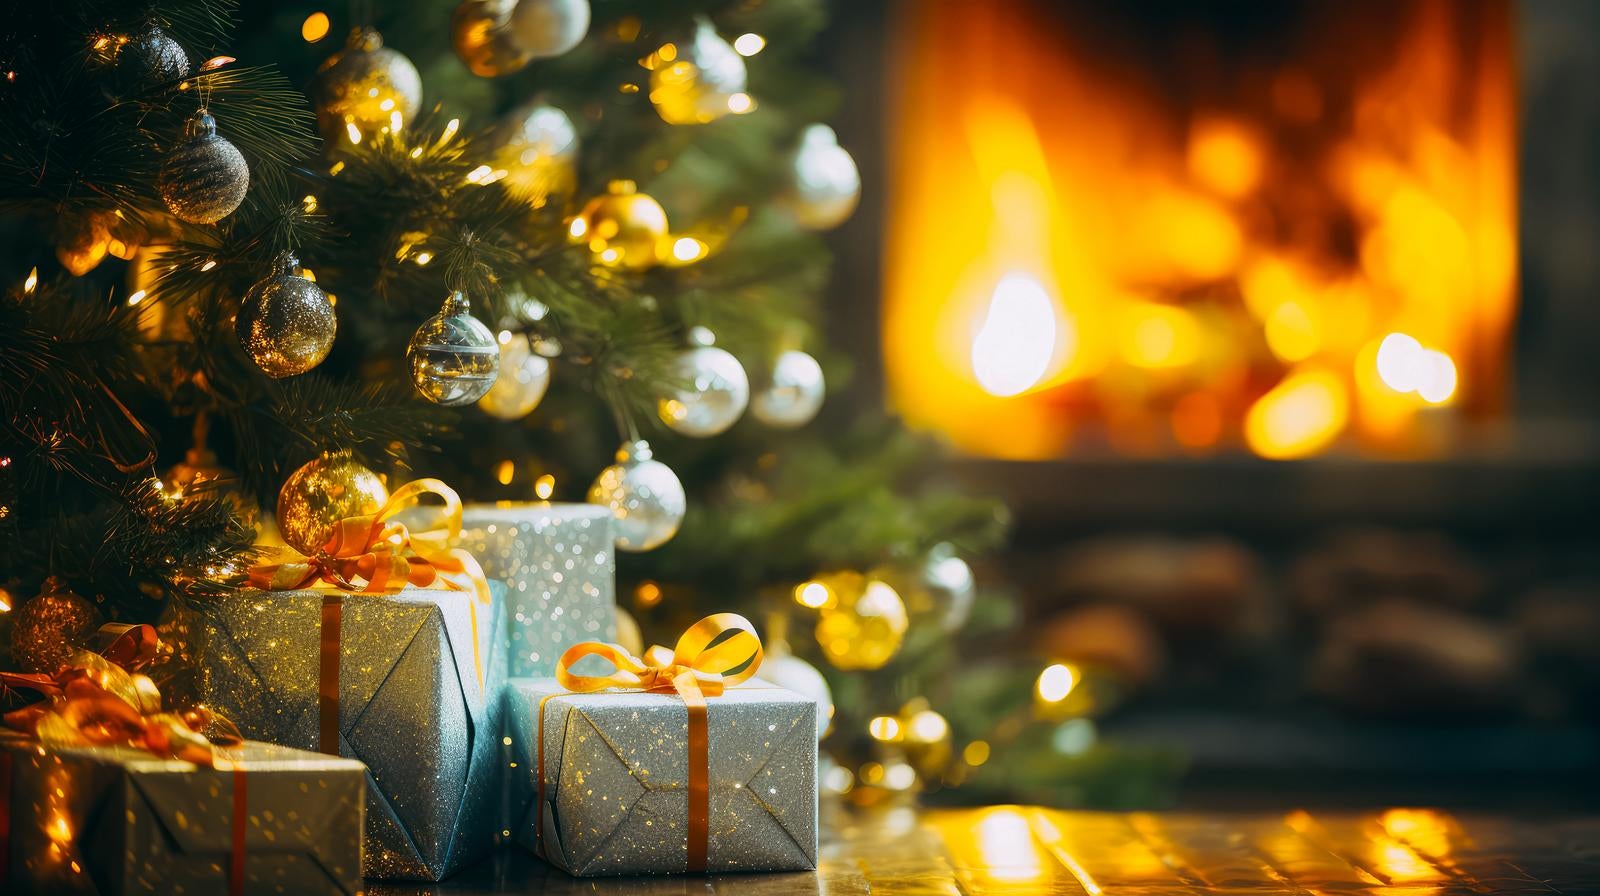 「クリスマスツリープレゼントボックスの暖炉」の写真